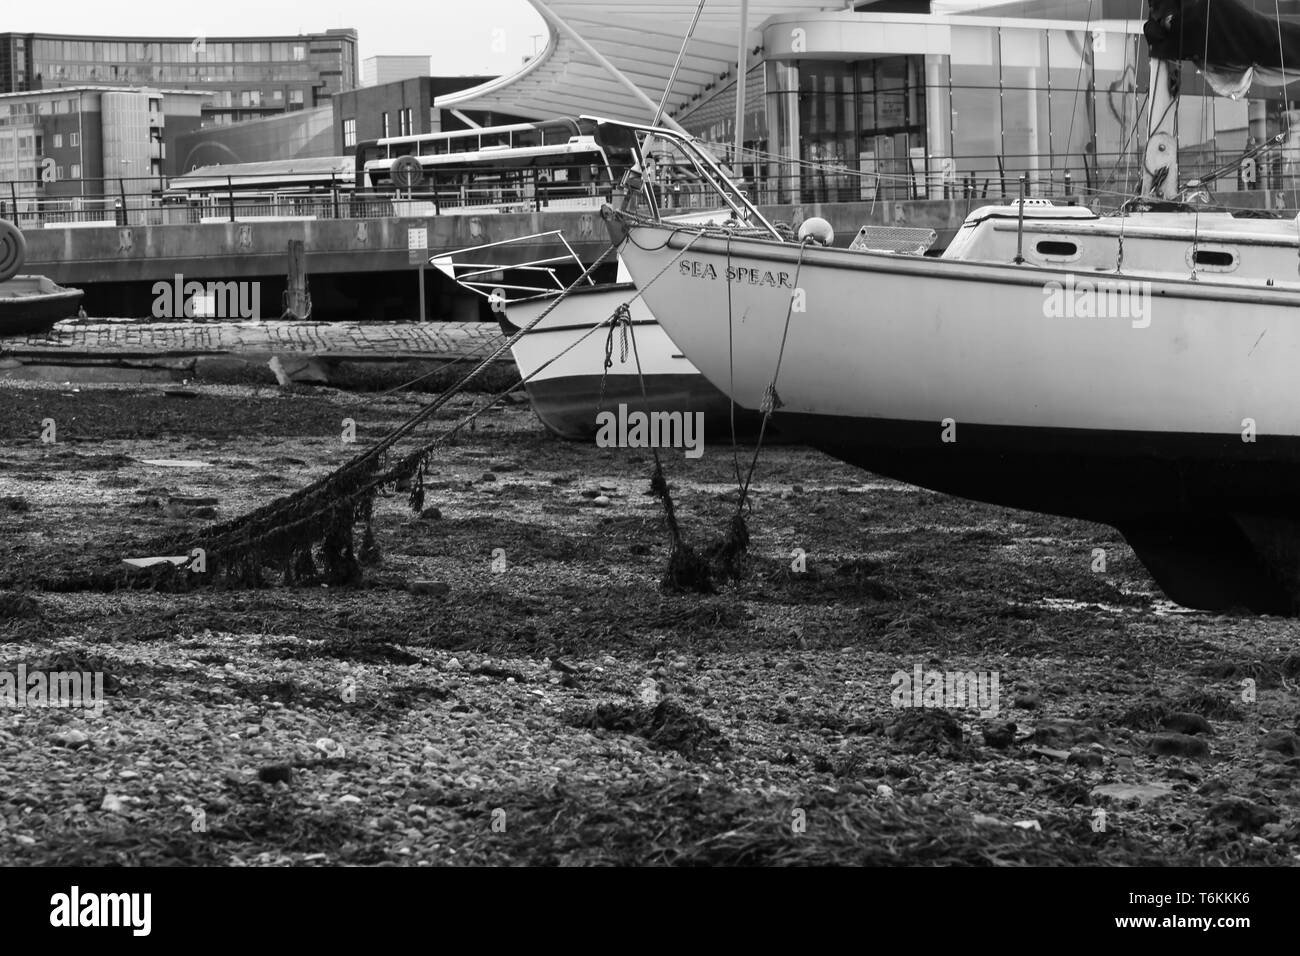 Bateau à voile dans le port de Portsmouth à marée basse. Portsmouth, Angleterre. UK Banque D'Images